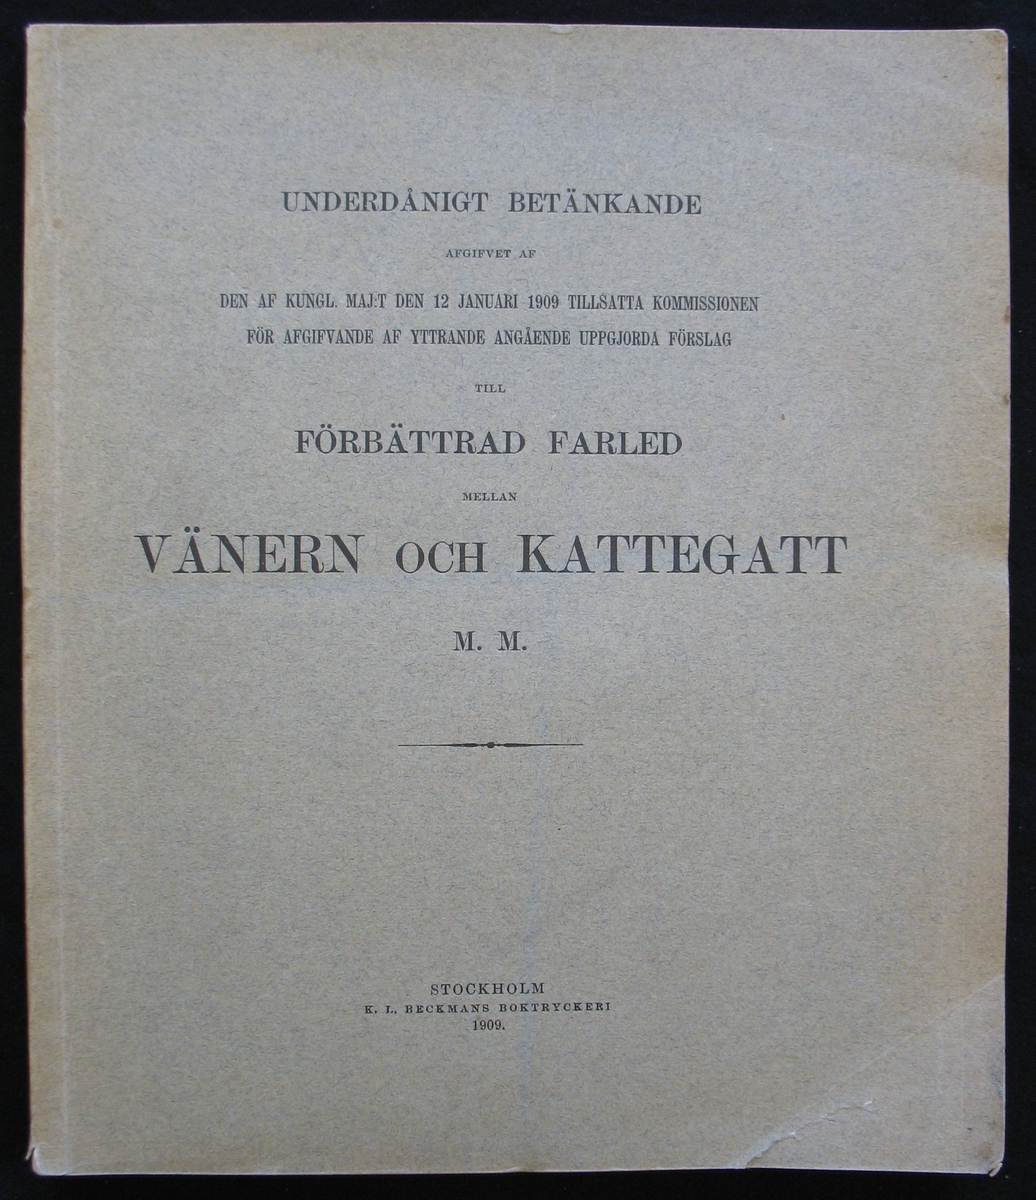 Häfte: ''Underdånigt betänkande afgivet av den af Kungl. Maj:t den 12 januari 1909 tillsatta kommissionen för afgifvande af yttrande angående uppfjorda förslag till förbättrad fartled mellan Vänern och Kattegatt m. m.''